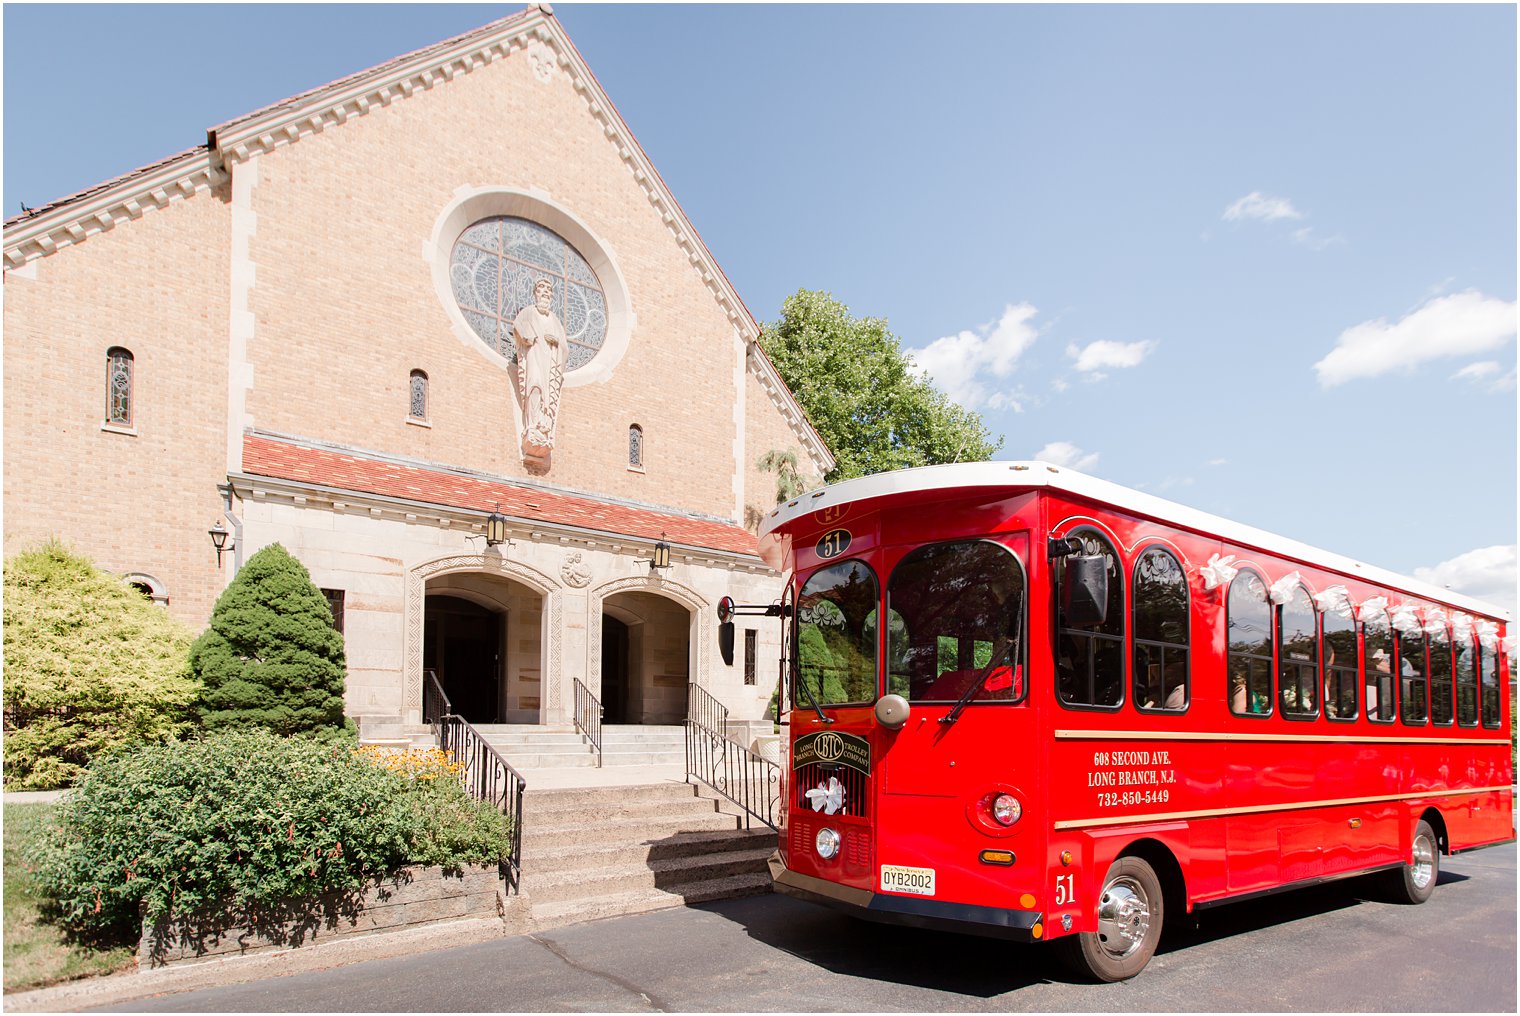 Long Branch Trolley at St. Luke's Church in Ho-Ho-Kus